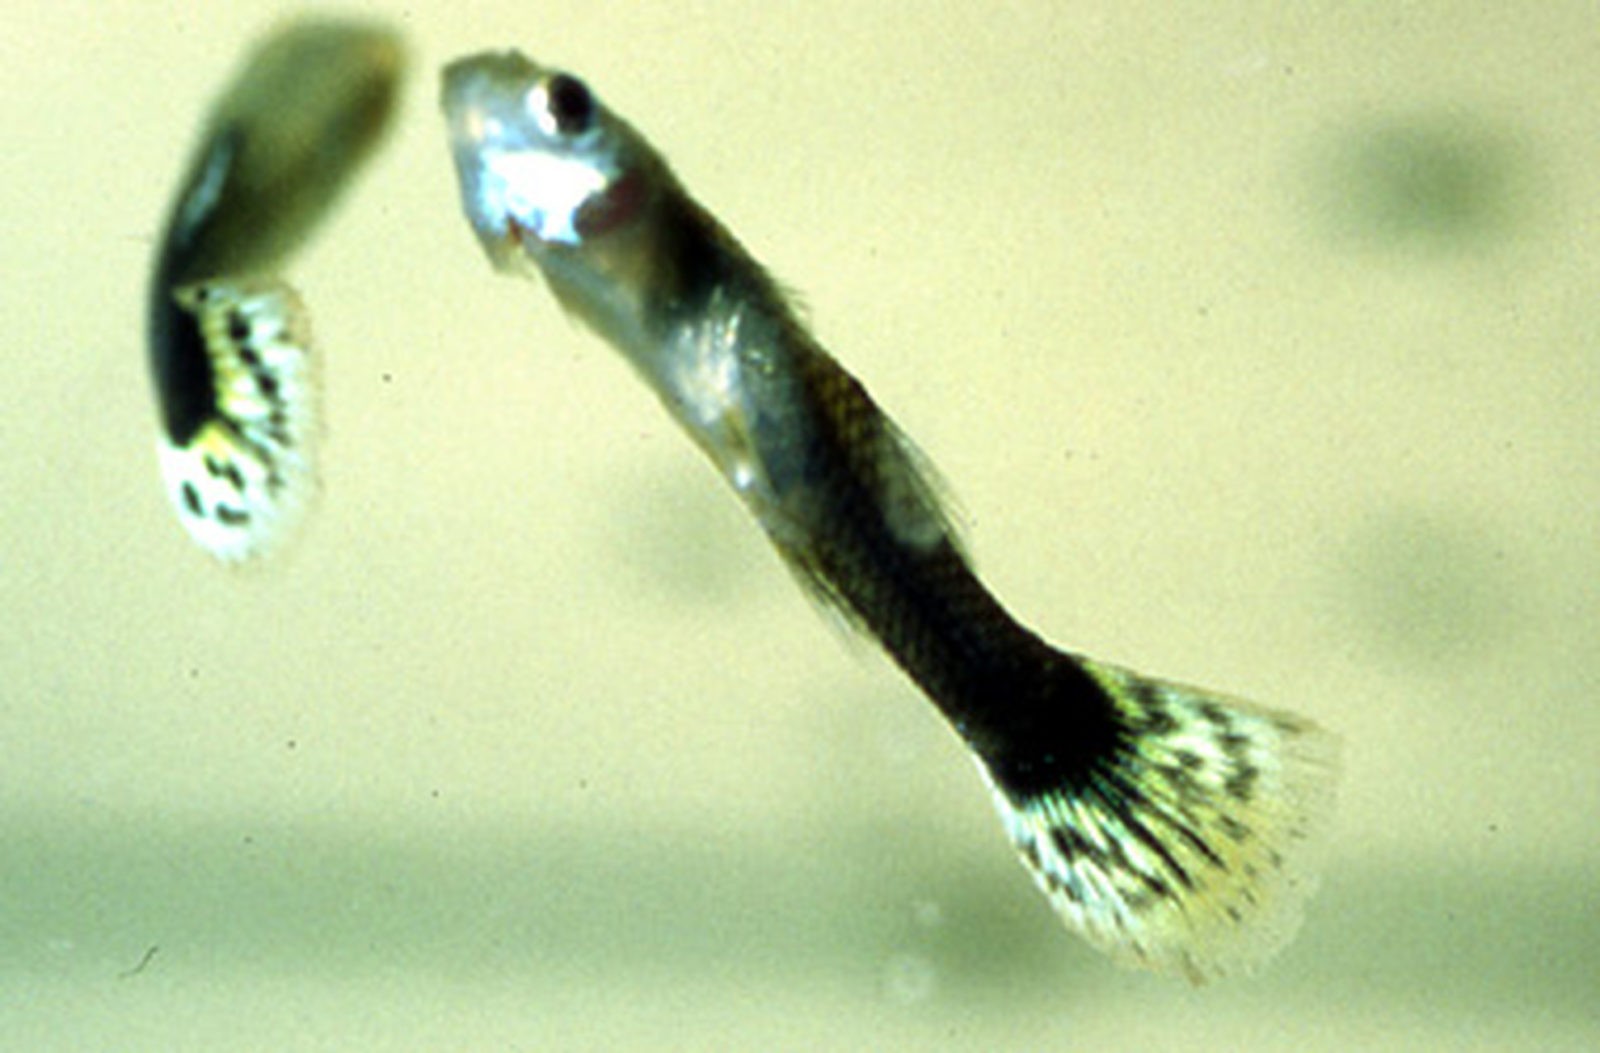 Болезнь черных пятен у аквариумных рыб